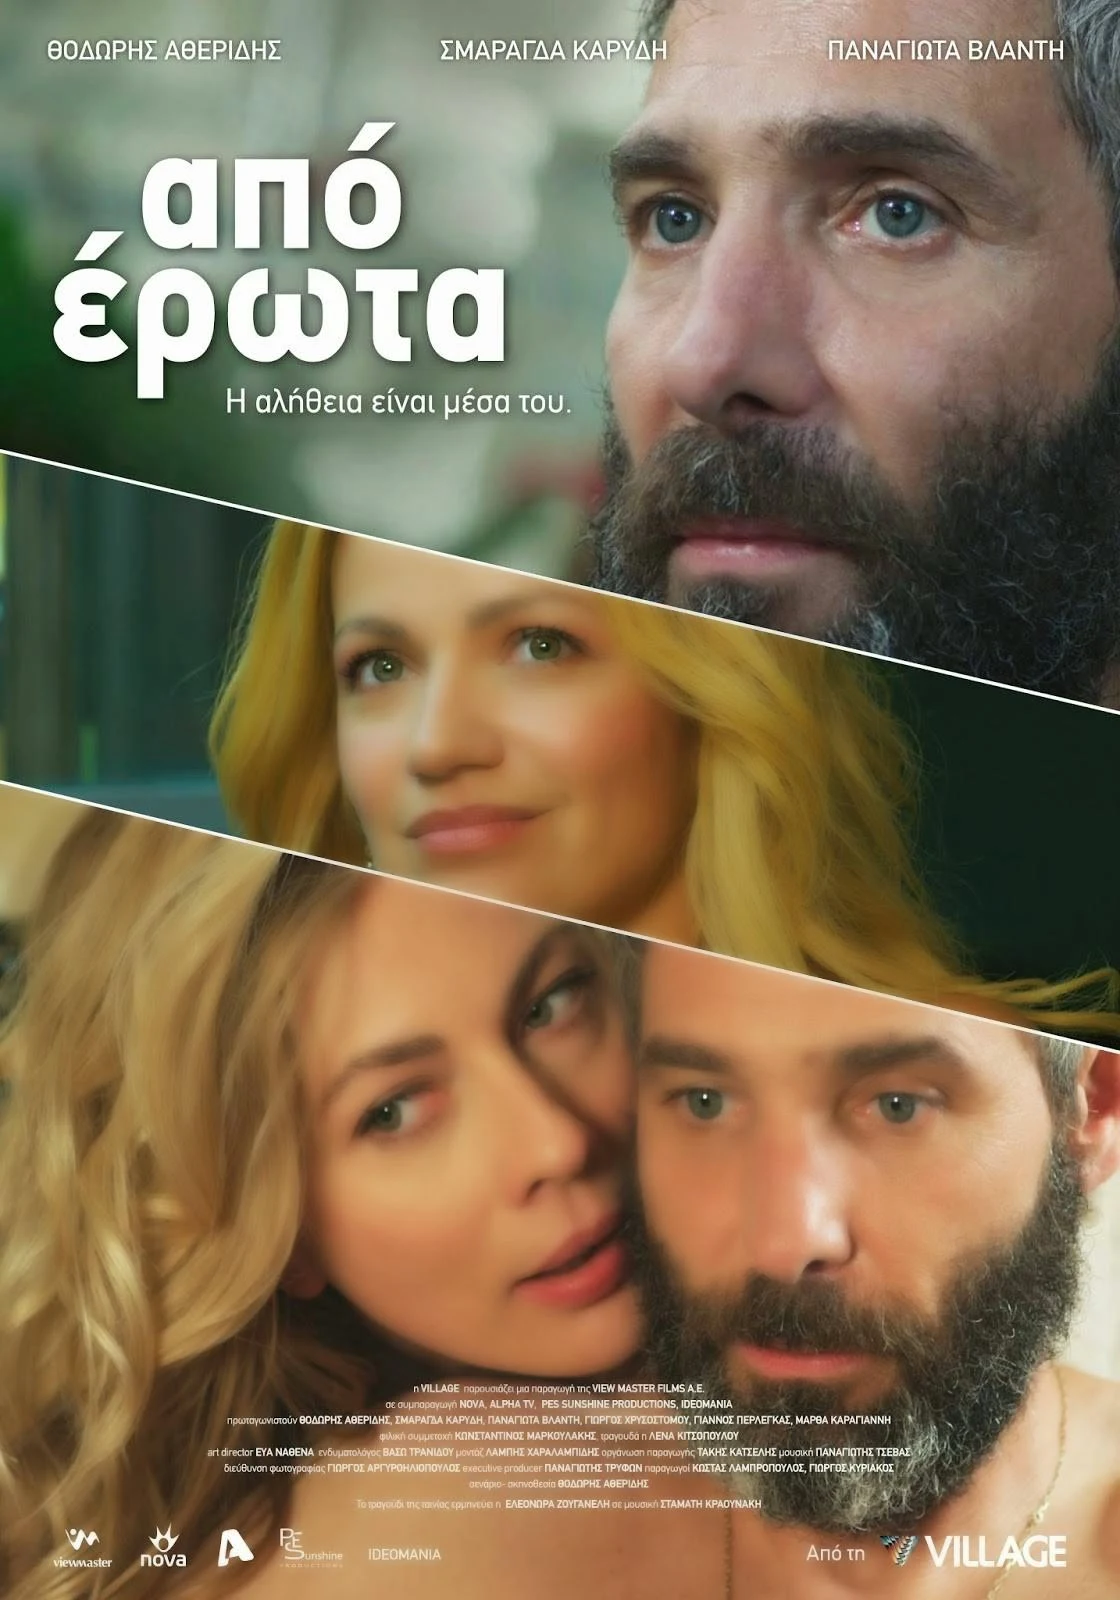 Χαλκίδα: Η νέα ταινία του Θοδωρή Αθερίδη στον κινηματογράφο ΜΑΓΙΑ! 